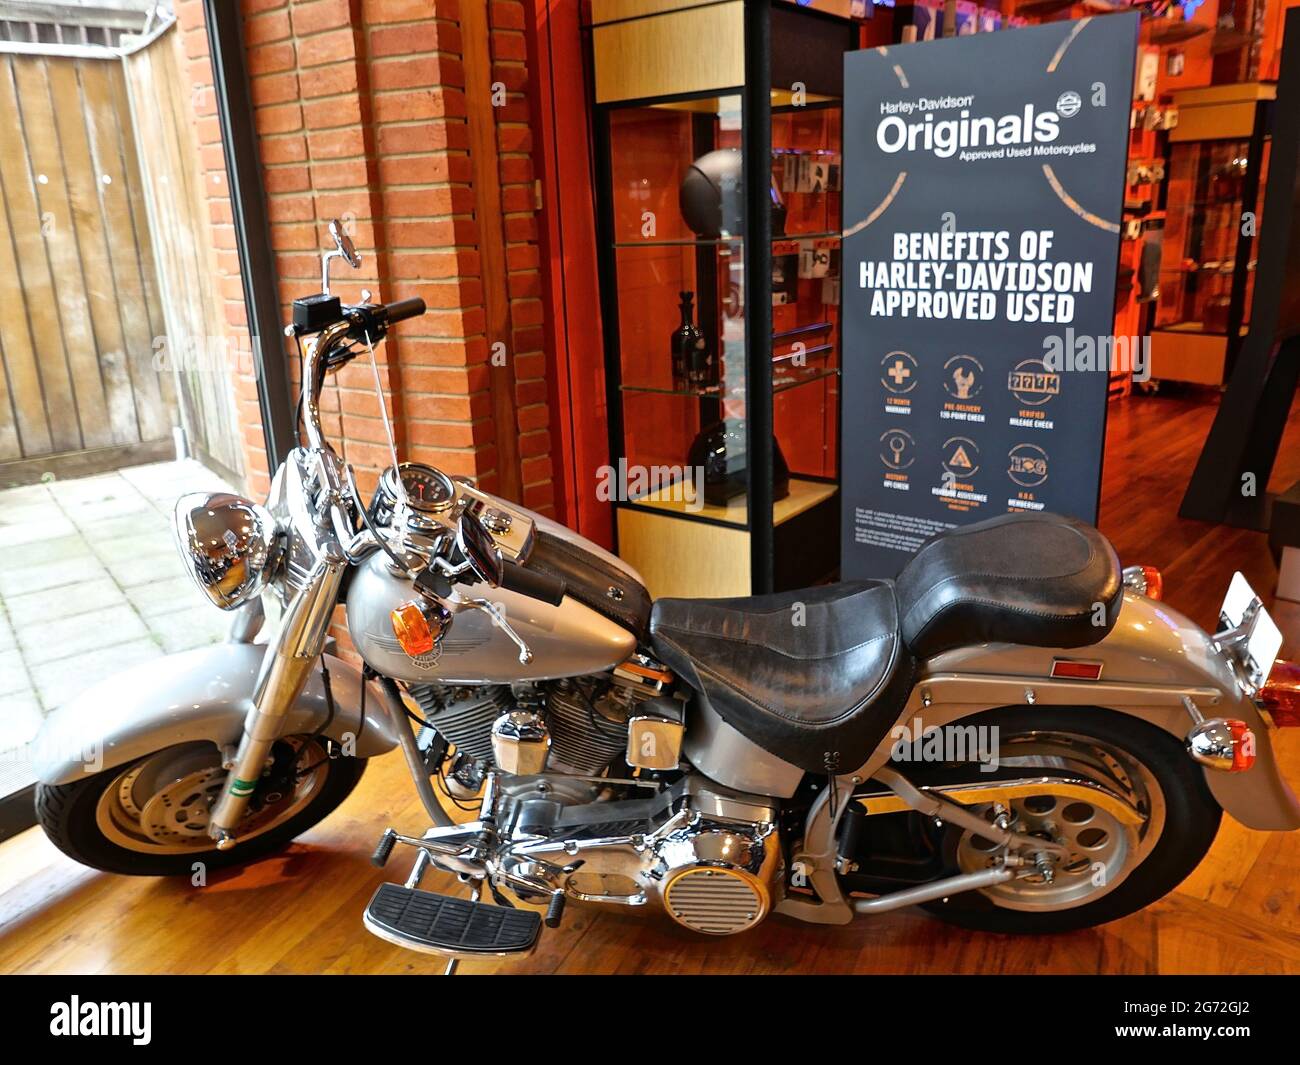 Harley-Davidson di Warr è il gruppo di concessionari Harley autorizzato più  vecchio e più grande d'Europa, con due sedi premiate a Londra. Fondata nel  1924, i nostri servizi includono Vendite nuove e